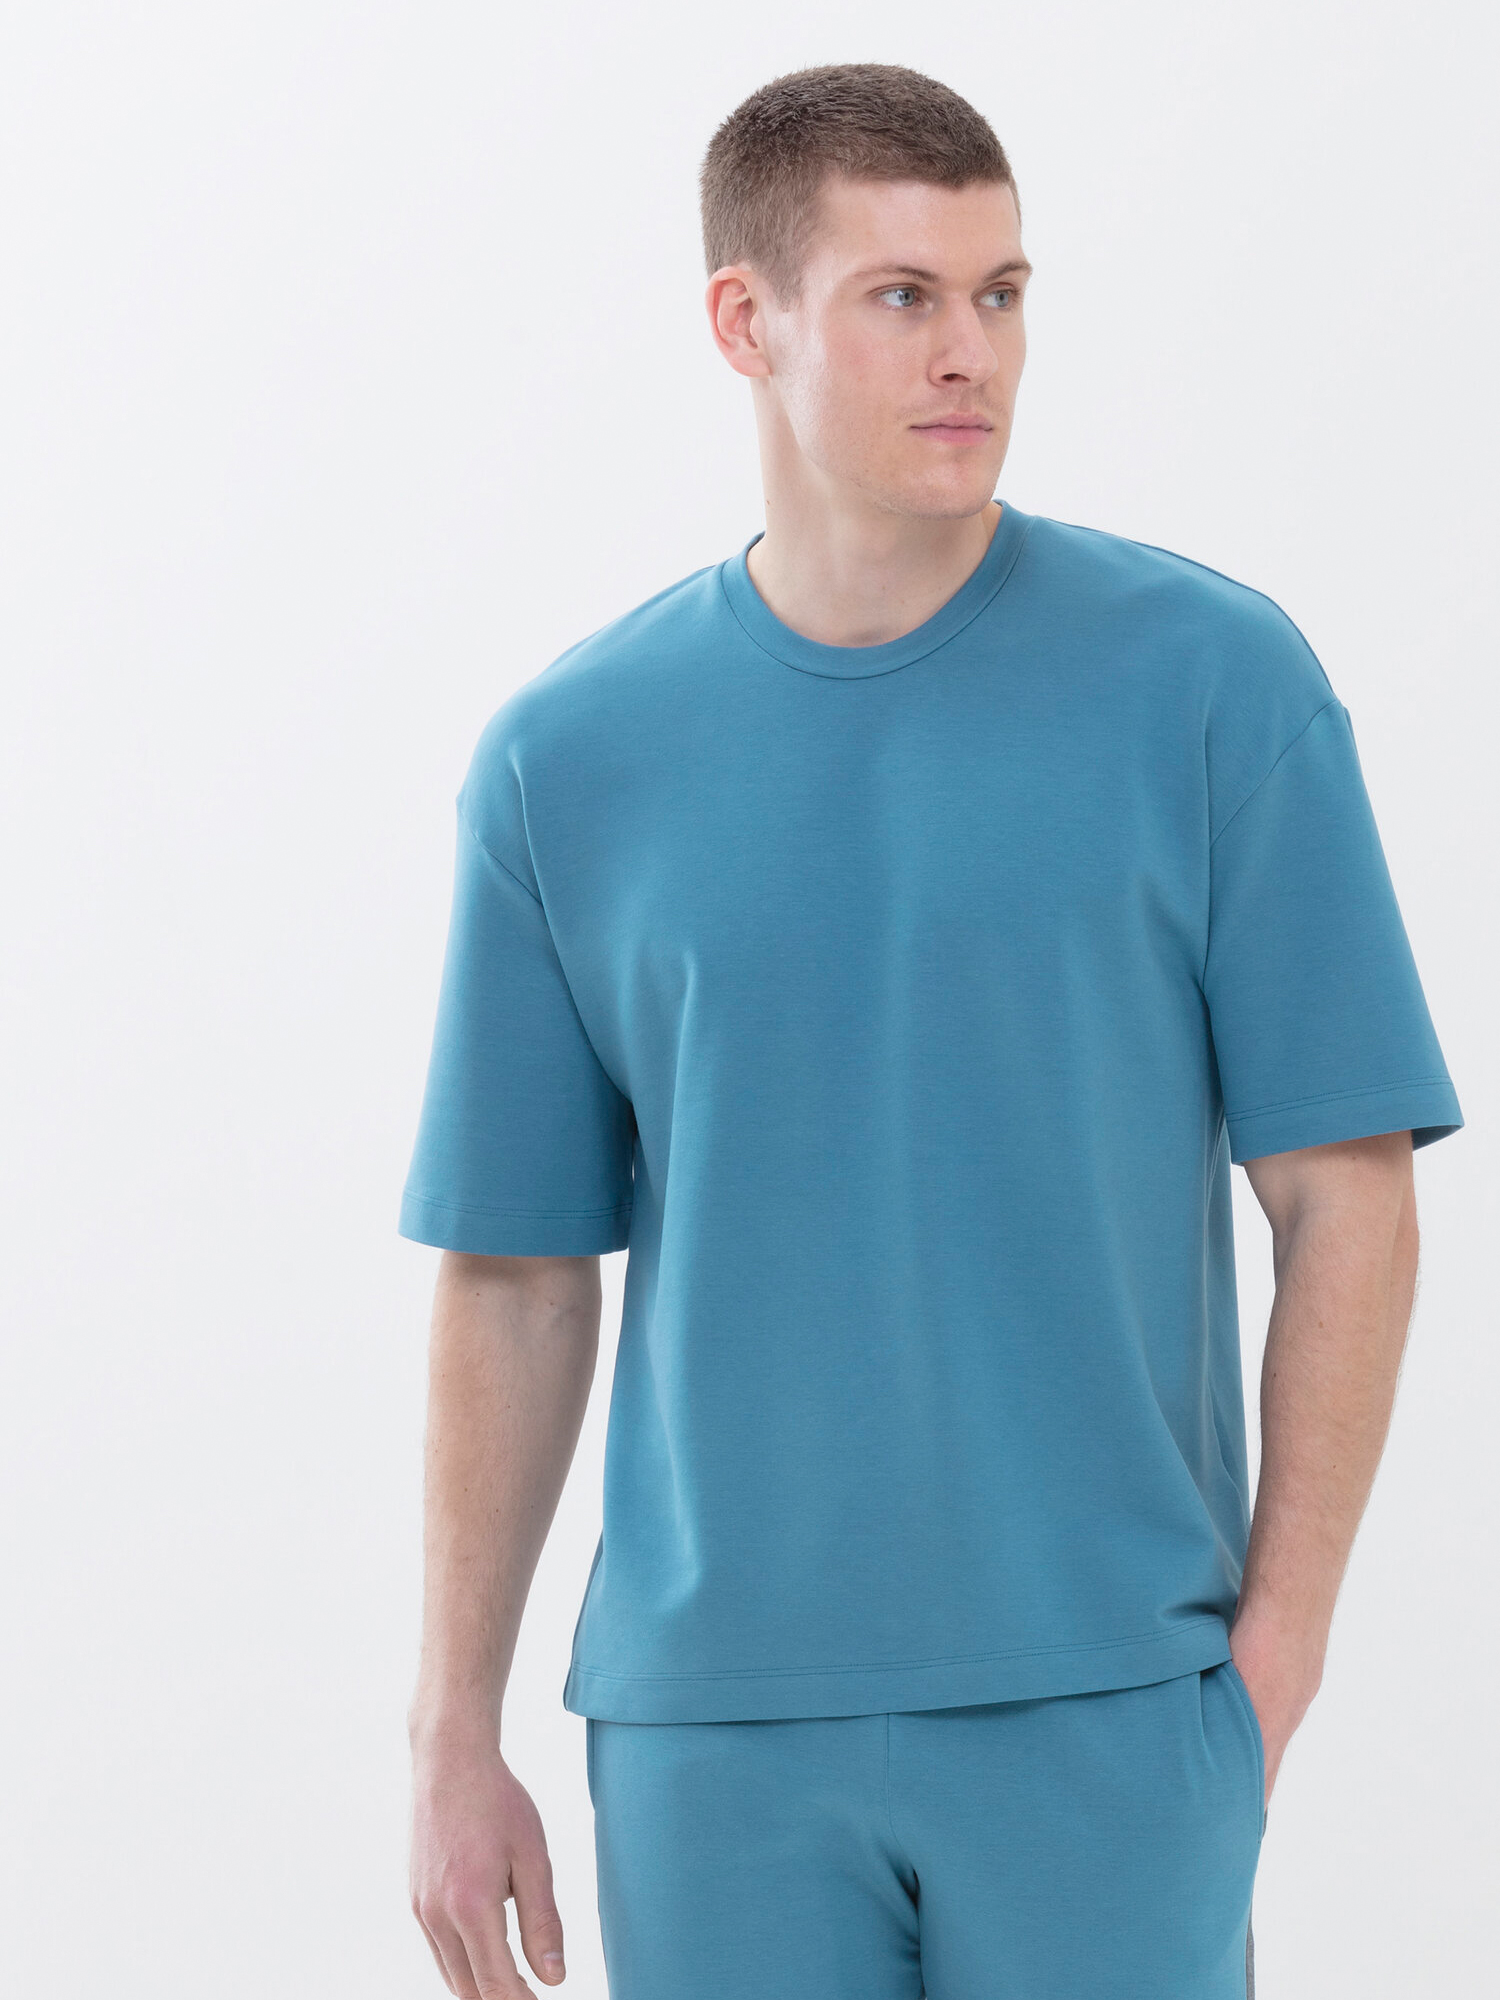 Gemütliche Homewear mit T-Shirts und passenden Hosen| mey®